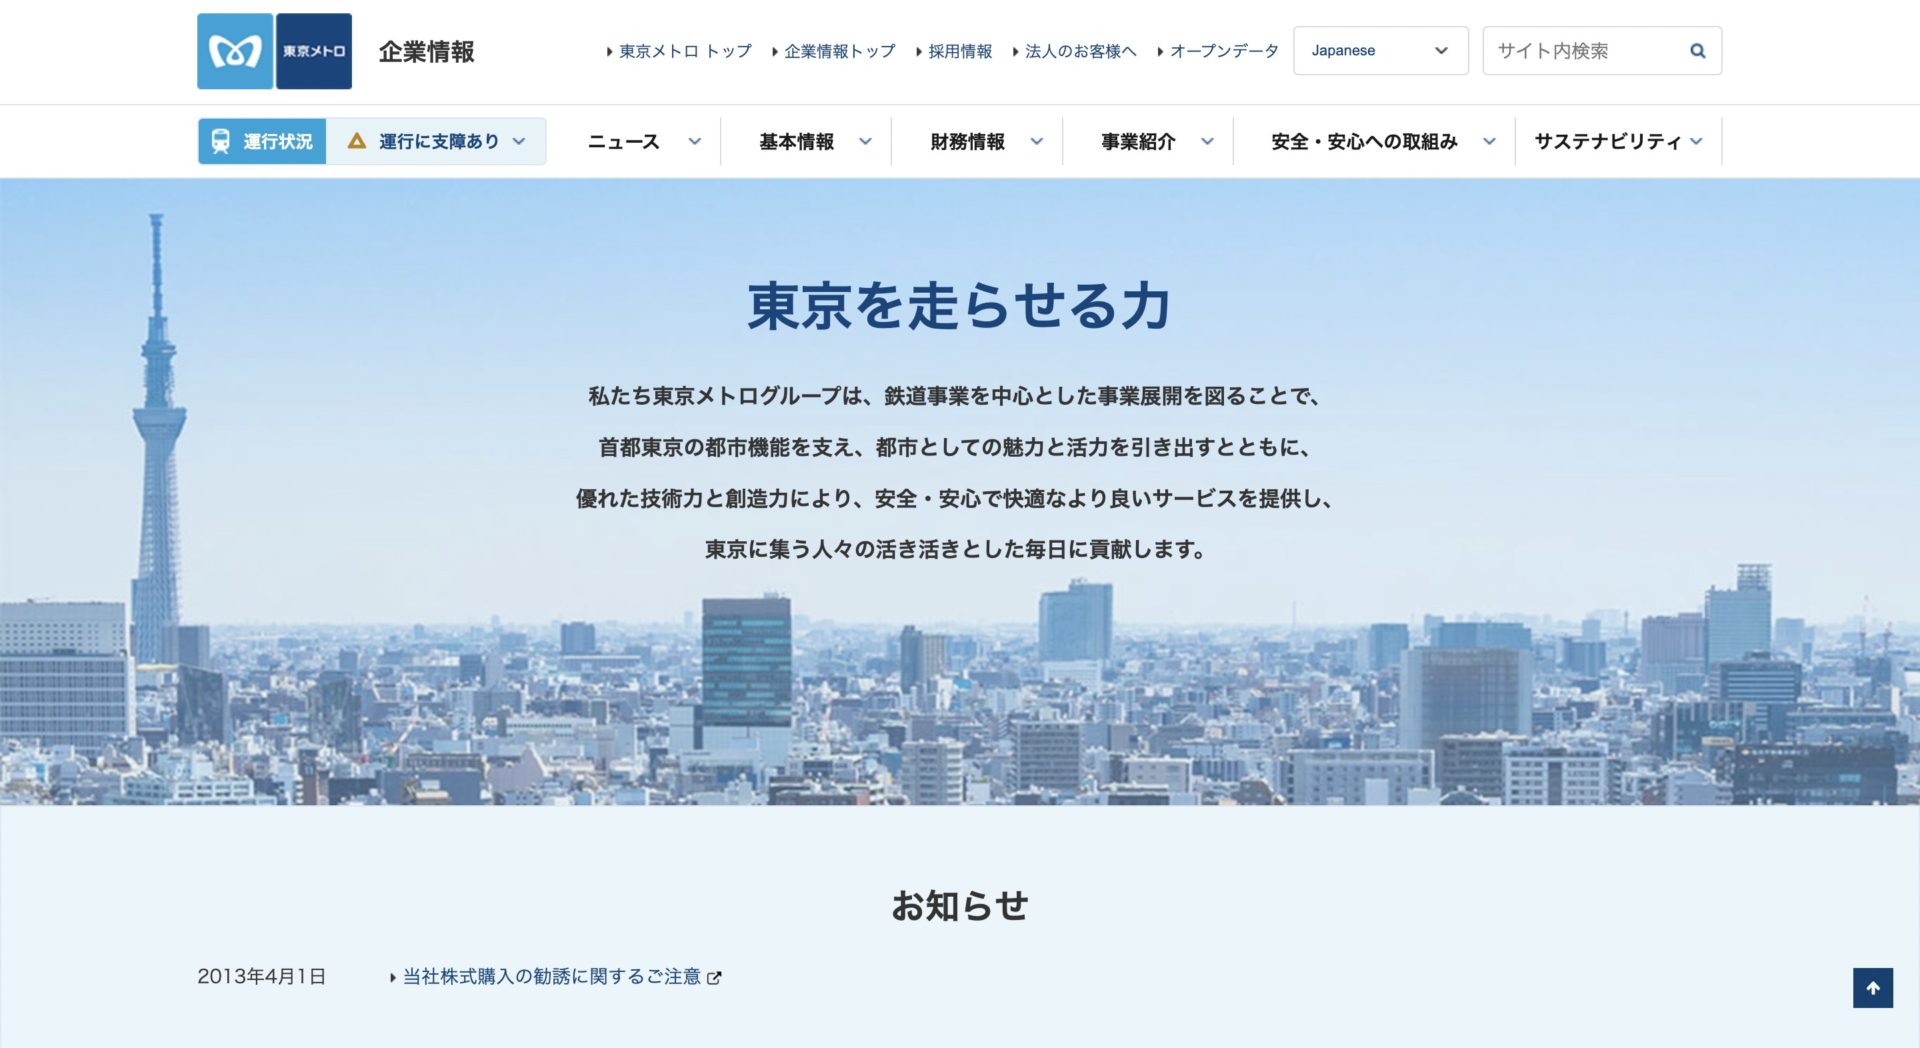 東京地下鉄株式会社のサイトページ画面